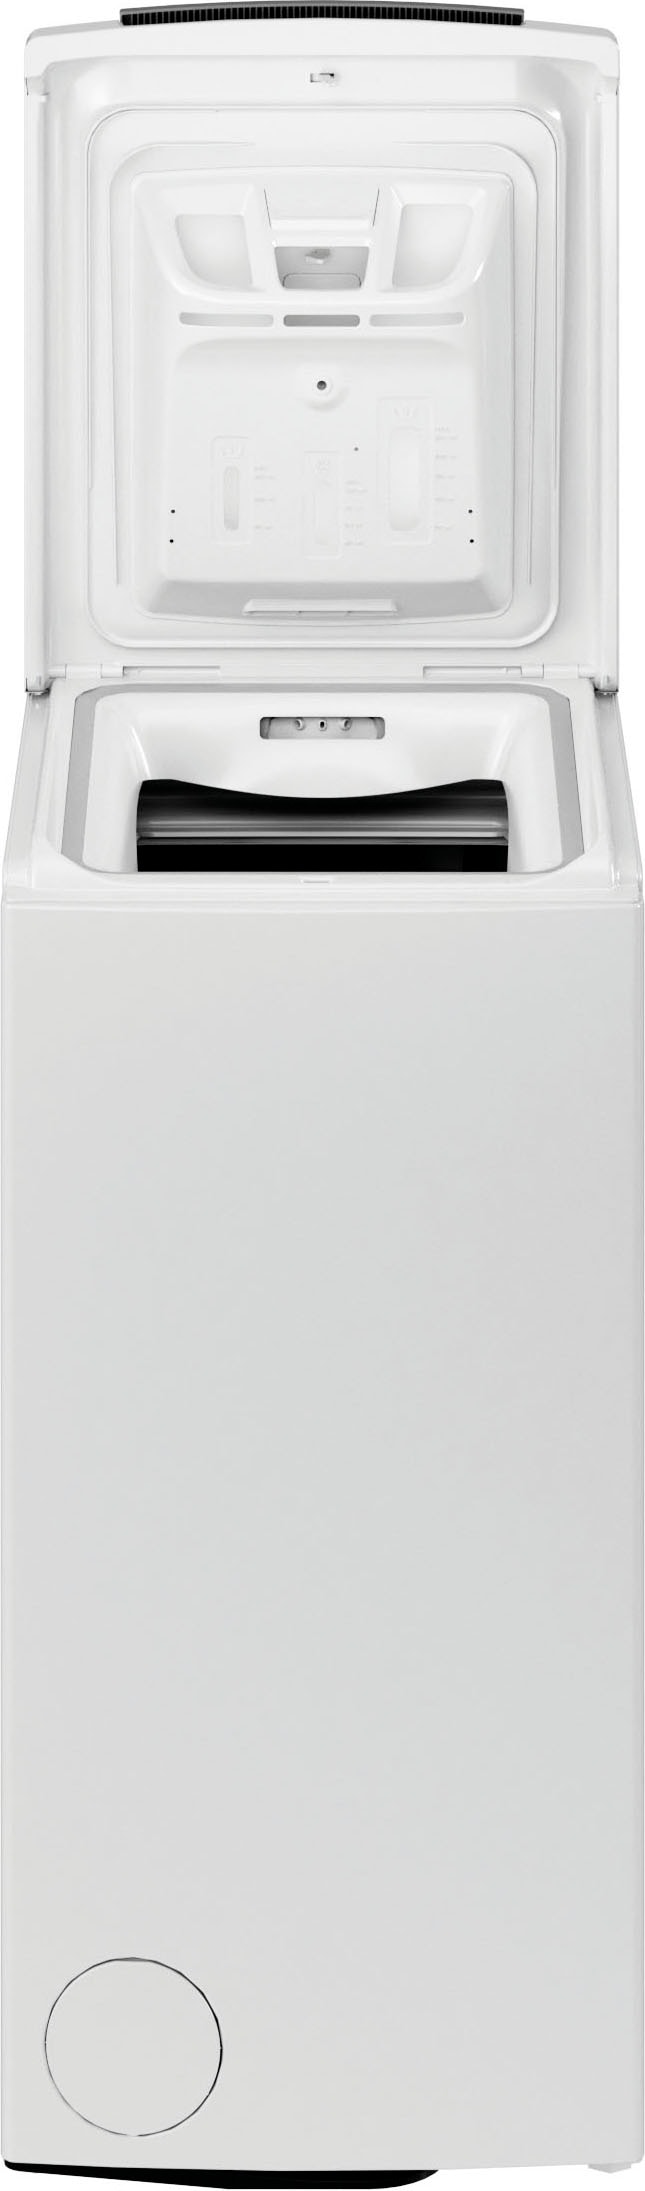 BAUKNECHT Waschmaschine Toplader »WMT 6513 B5«, WMT 6513 B5, 6 kg, 1200 U/ min jetzt bei OTTO